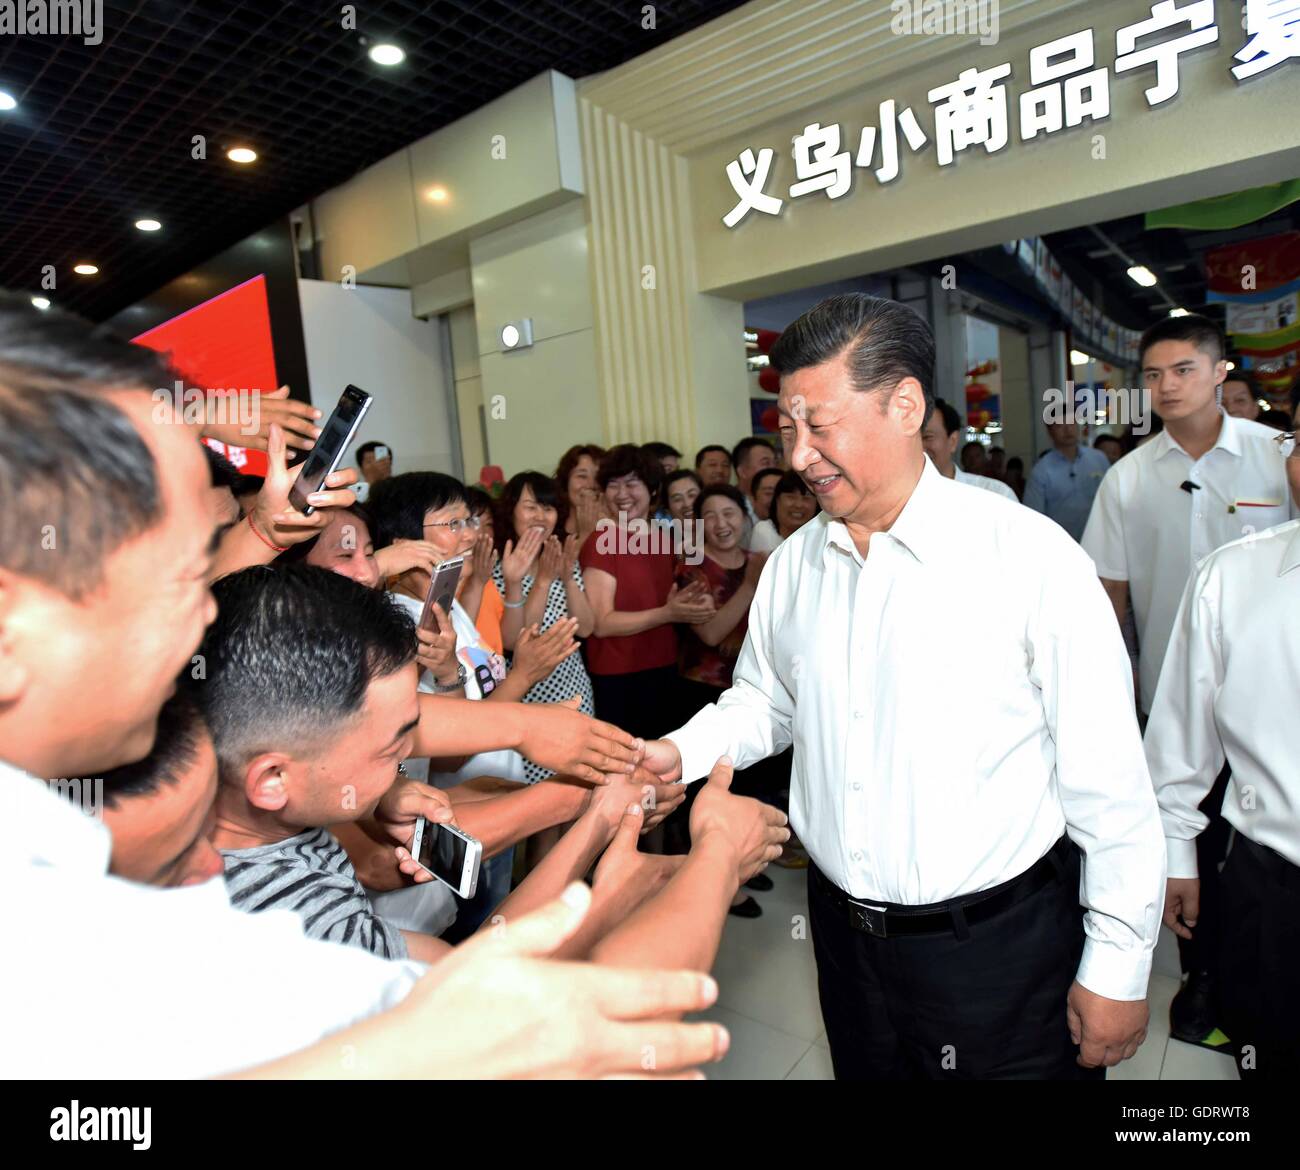 Yinchuan, Chine, région autonome du Ningxia Hui. 19 juillet, 2016. Le président chinois Xi Jinping, serre la main avec les gens au cours de sa visite dans un incubateur park établi avec la coopération entre Ningxia et la Province de Zhejiang à Yinchuan, capitale de la Chine du nord-ouest de la région autonome du Ningxia Hui, 19 juillet, 2016. Xi a fait une tournée d'inspection de trois jours dans la région de Ningxia. © Li Tao/Xinhua/Alamy Live News Banque D'Images